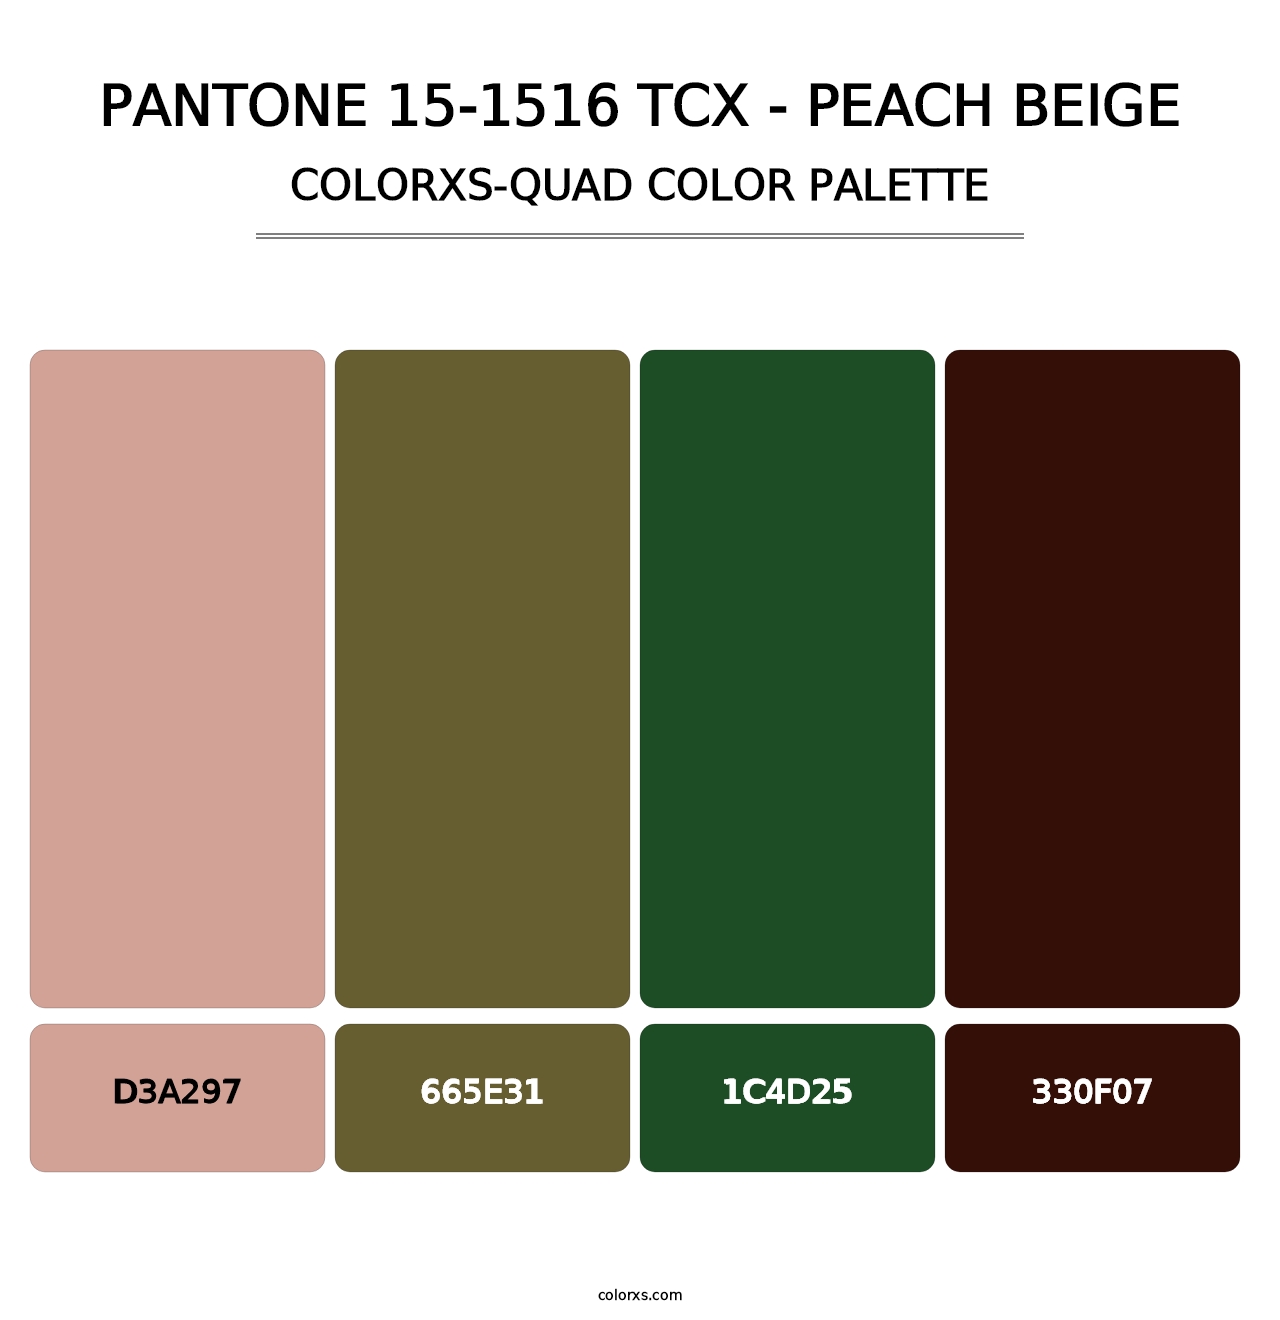 PANTONE 15-1516 TCX - Peach Beige - Colorxs Quad Palette